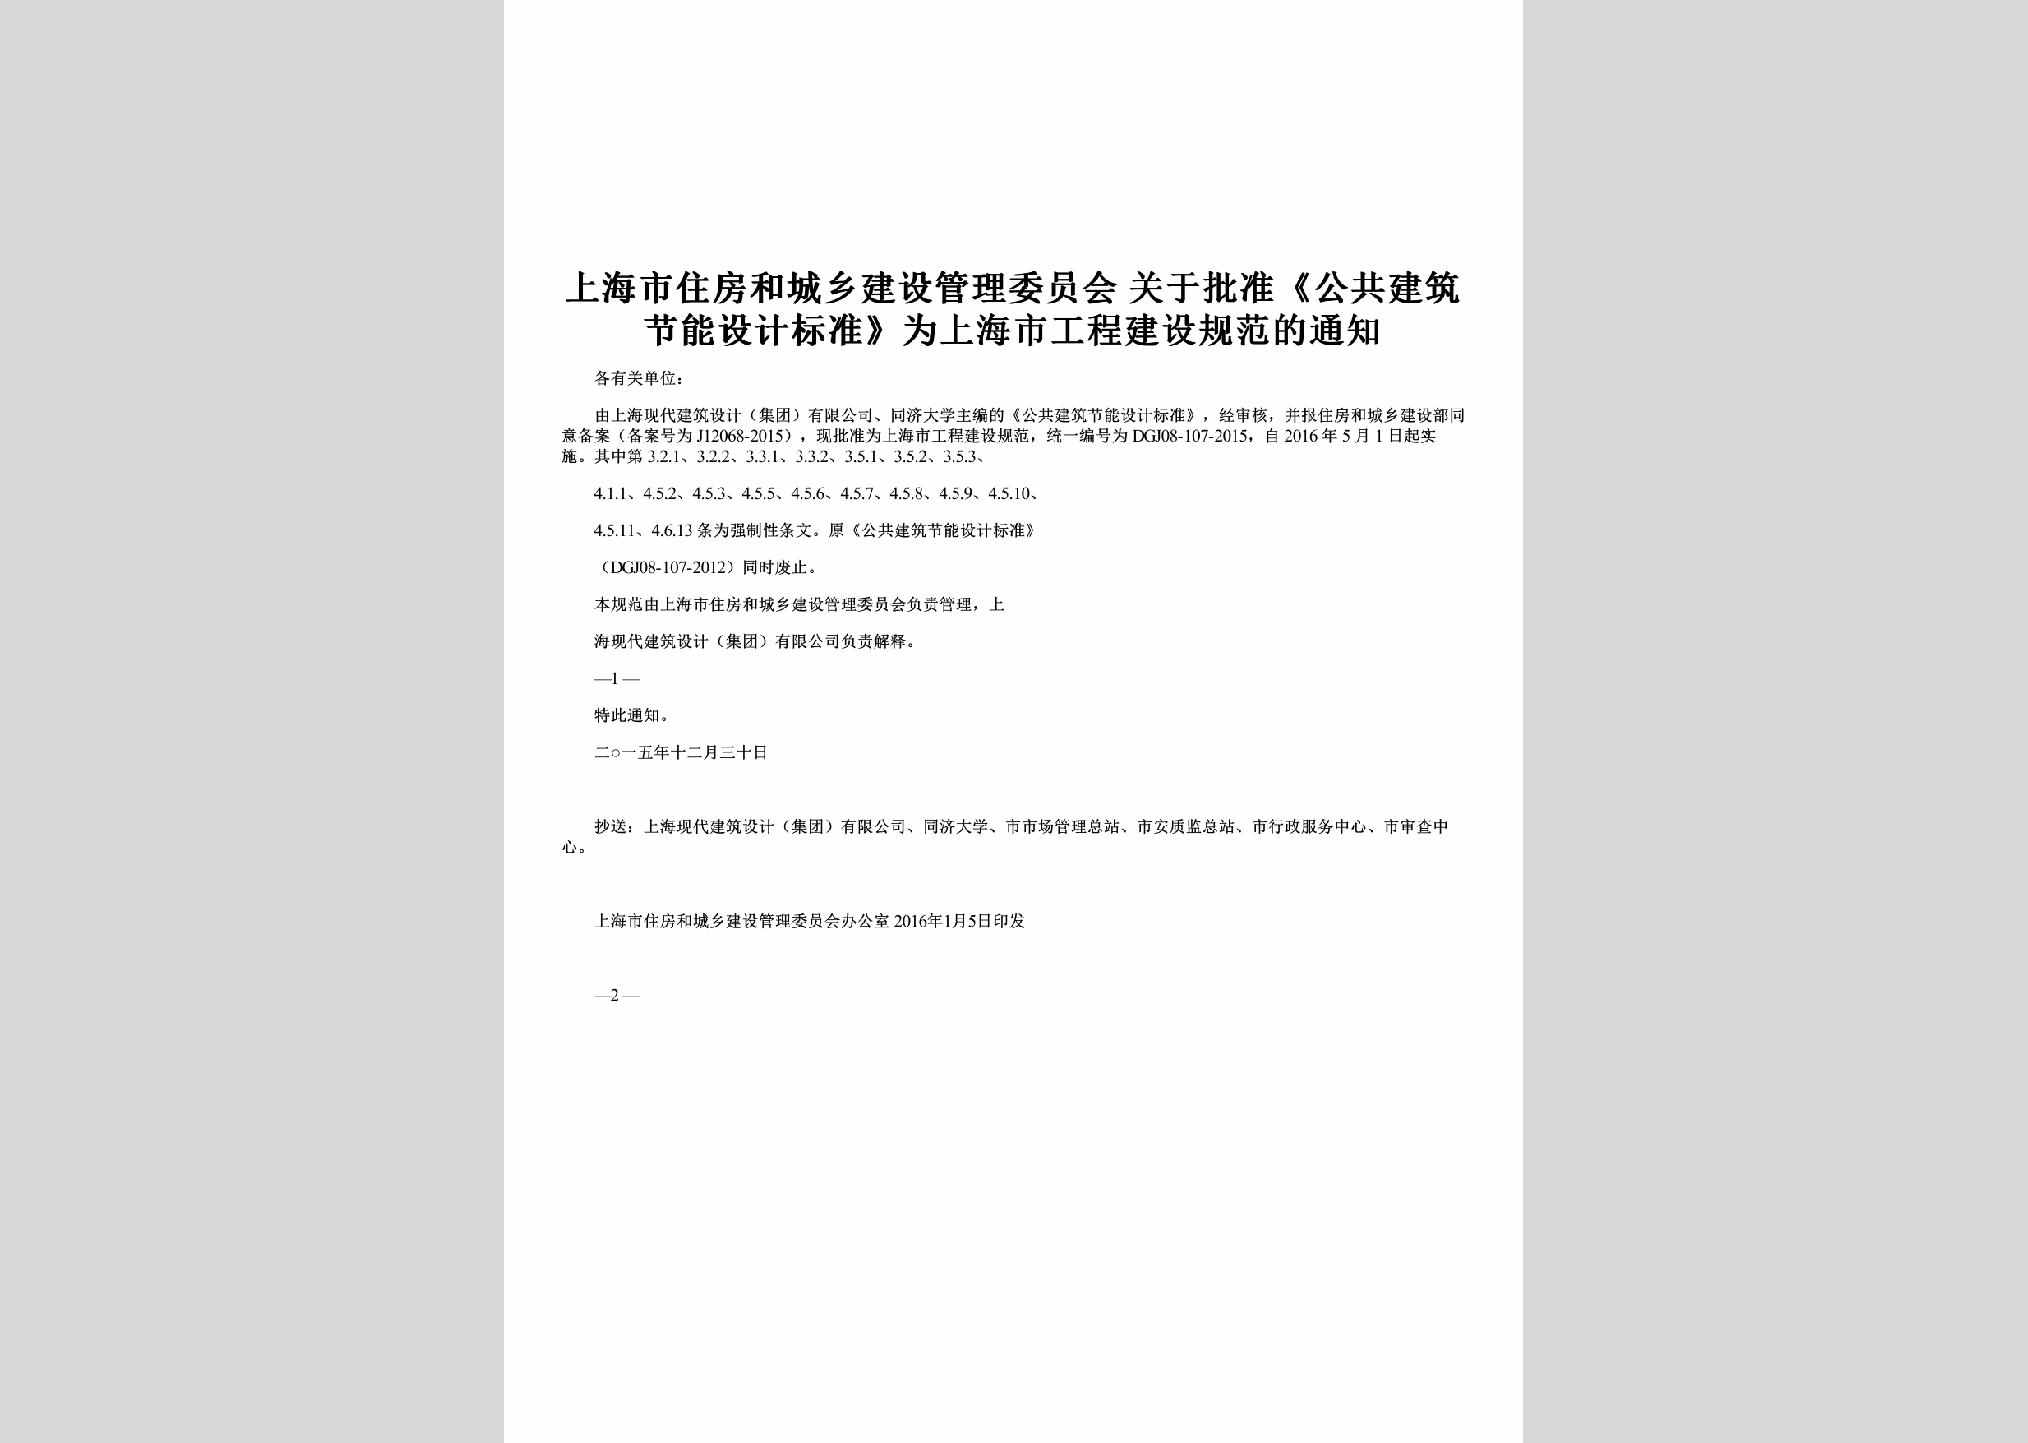 SH-JNBZGFTZ-2016：关于批准《公共建筑节能设计标准》为上海市工程建设规范的通知